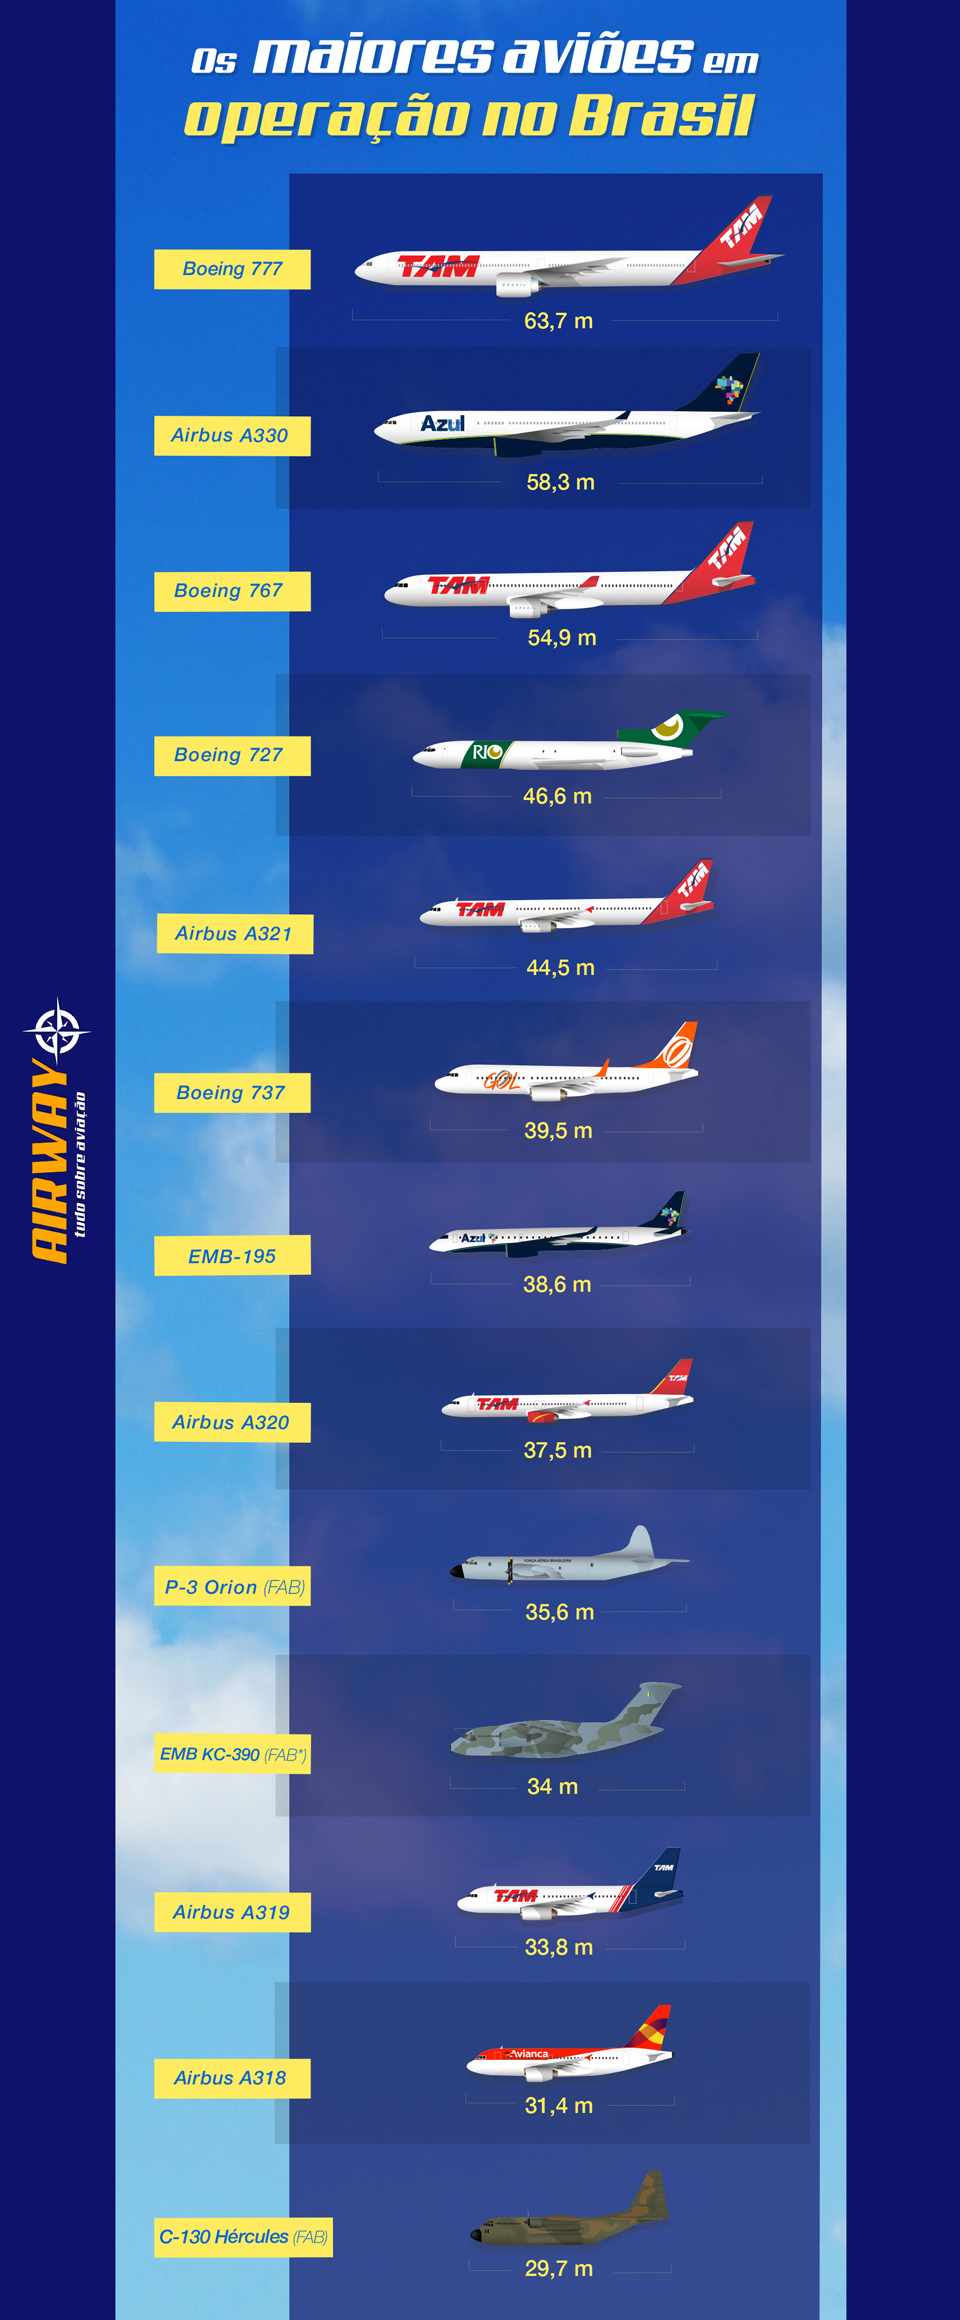 Até o final de 2015 vai entrar na lista do novo Airbus A350 da TAM. *O KC-390 deve ser concluído até o final de 2016 (Infográfico - Thiago Perotii)